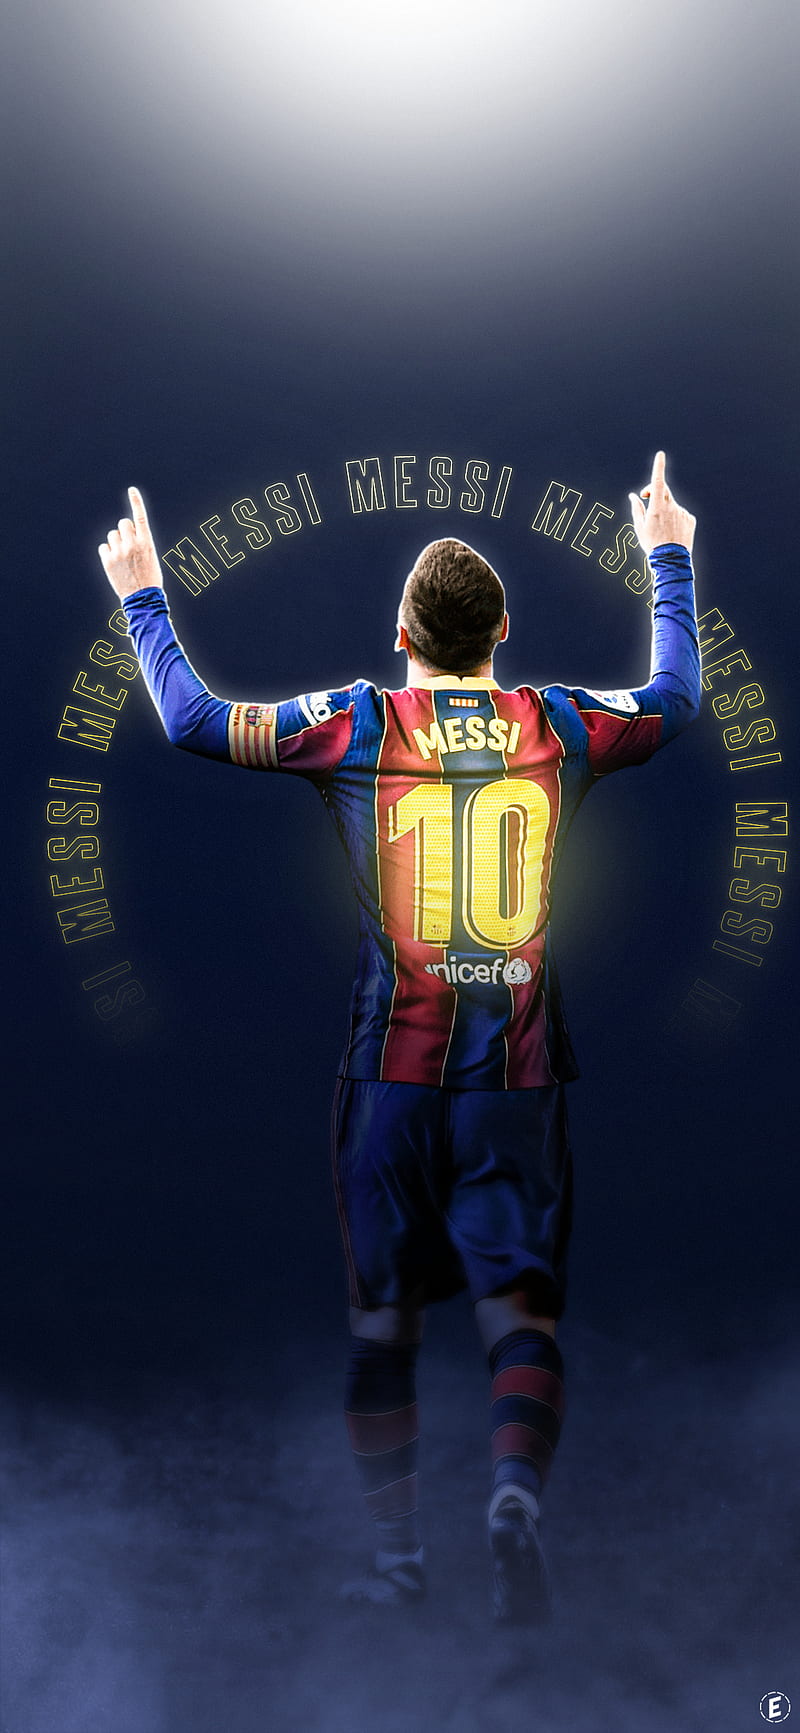 Hình nền Lionel Messi sẽ đem lại không gian mới cho thiết bị của bạn. Hãy chiêm ngưỡng vẻ đẹp của cầu thủ bóng đá này thông qua hình nền đầy sức sống và sáng tạo.